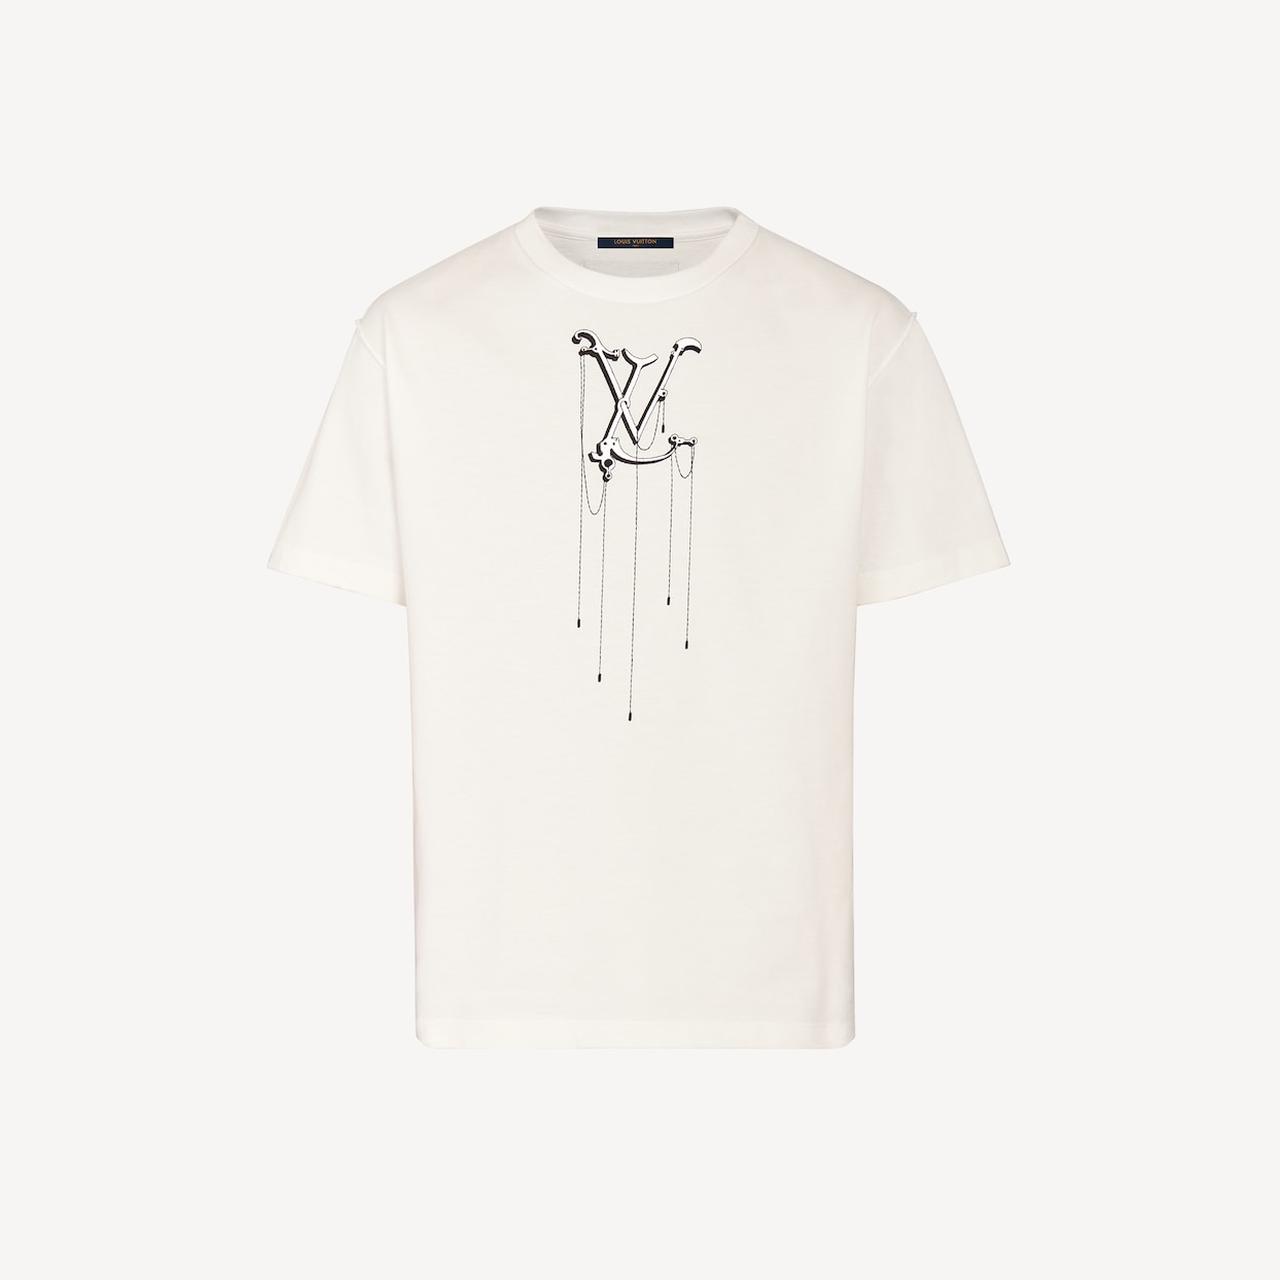 Louis Vuitton Mens t shirt - Depop